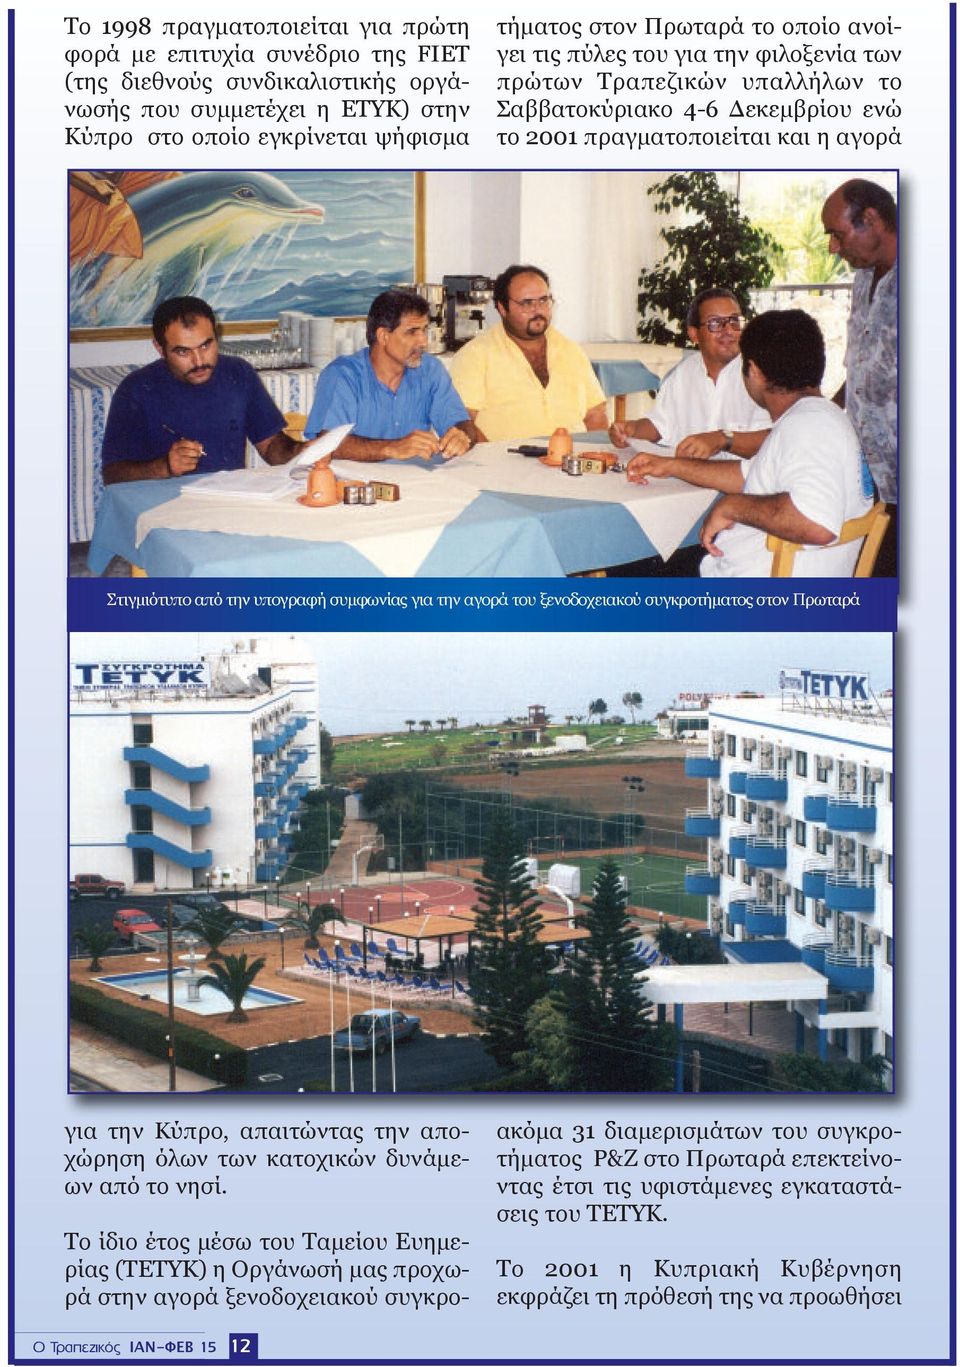 4-6 Δεκεμβρίου ενώ το 2001 πραγματοποιείται και η αγορά Στιγμιότυπο από την υπογραφή συμφωνίας για την αγορά του ξενοδοχειακού συγκροτήματος στον Πρωταρά για την Κύπρο, απαιτώντας την αποχώρηση όλων